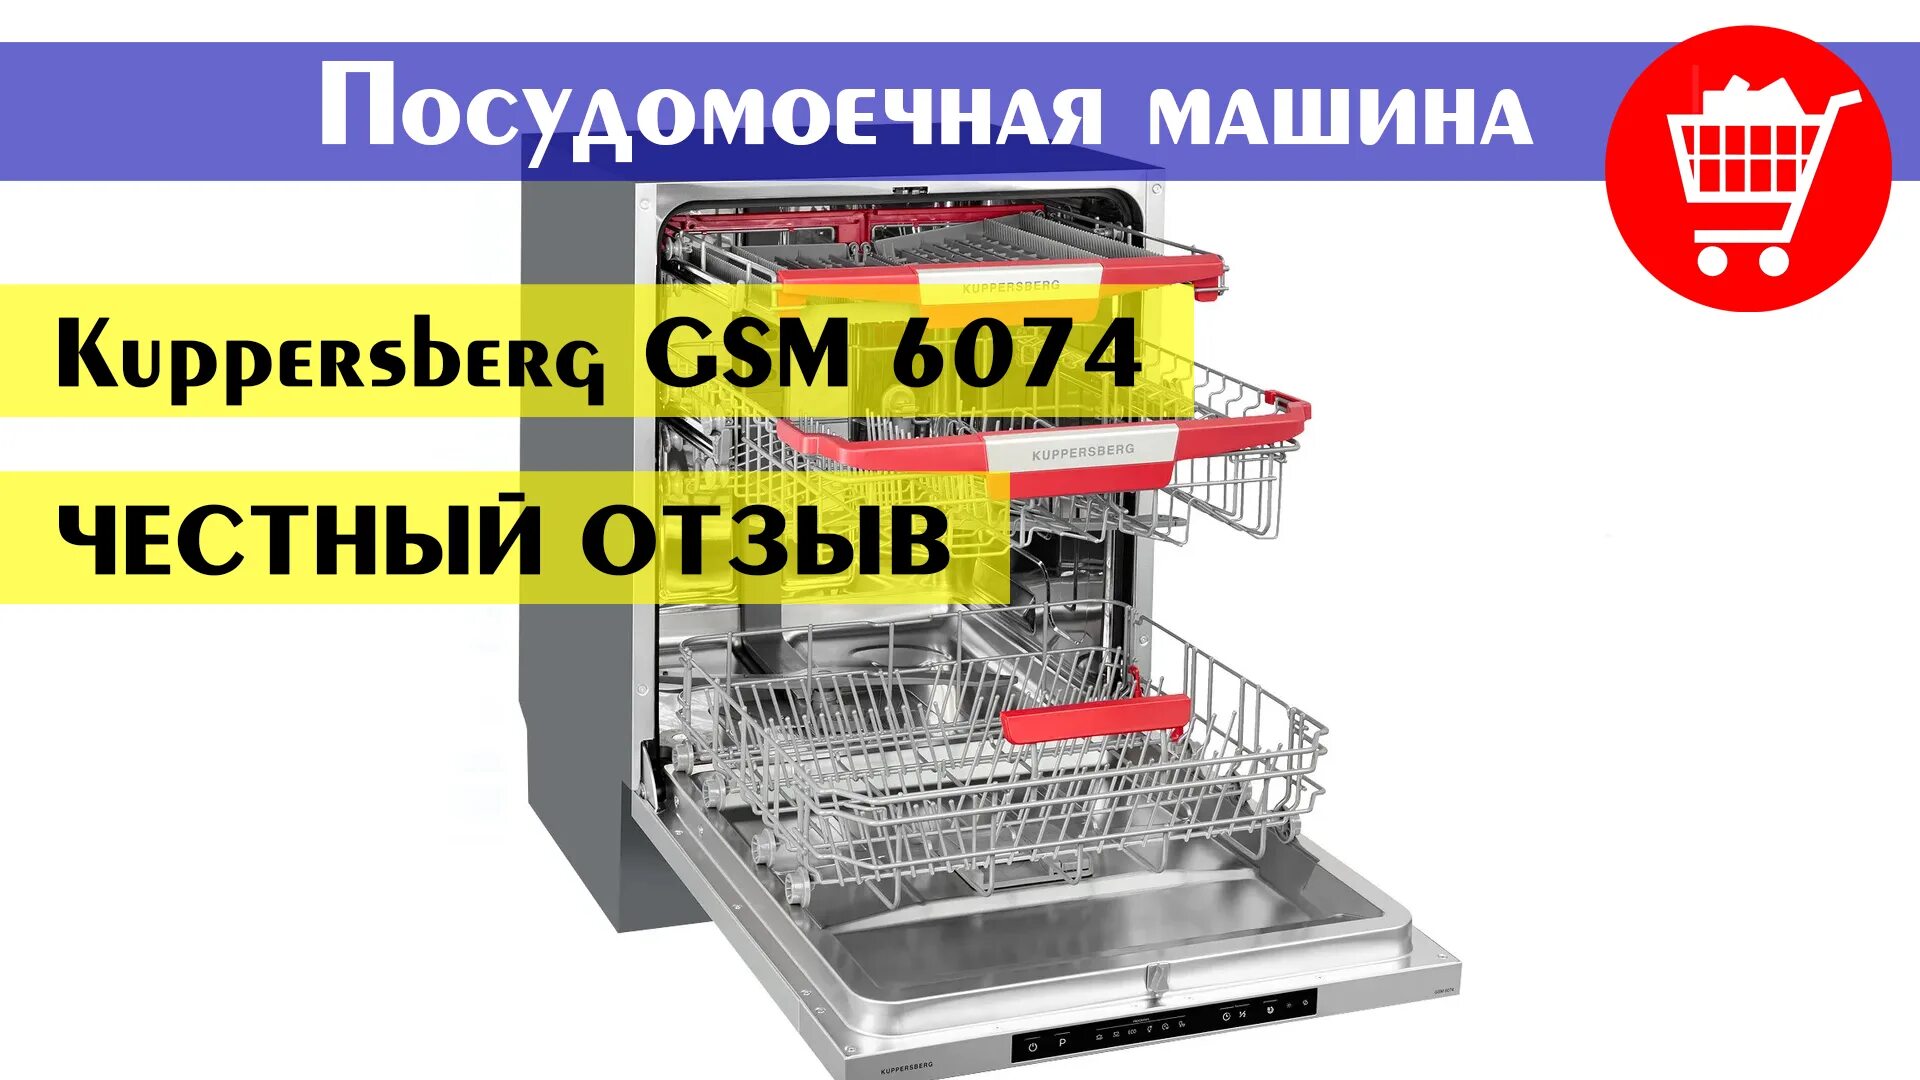 Посудомоечная машина Kuppersberg GSM 6074. Посудомоечная машина встраиваемая Kuppersberg GSM 4574. Встраиваемая посудомоечная машина 60 см Kuppersberg GSM 6074. Kuppersberg GS 6074. Машина kuppersberg gsm 4574